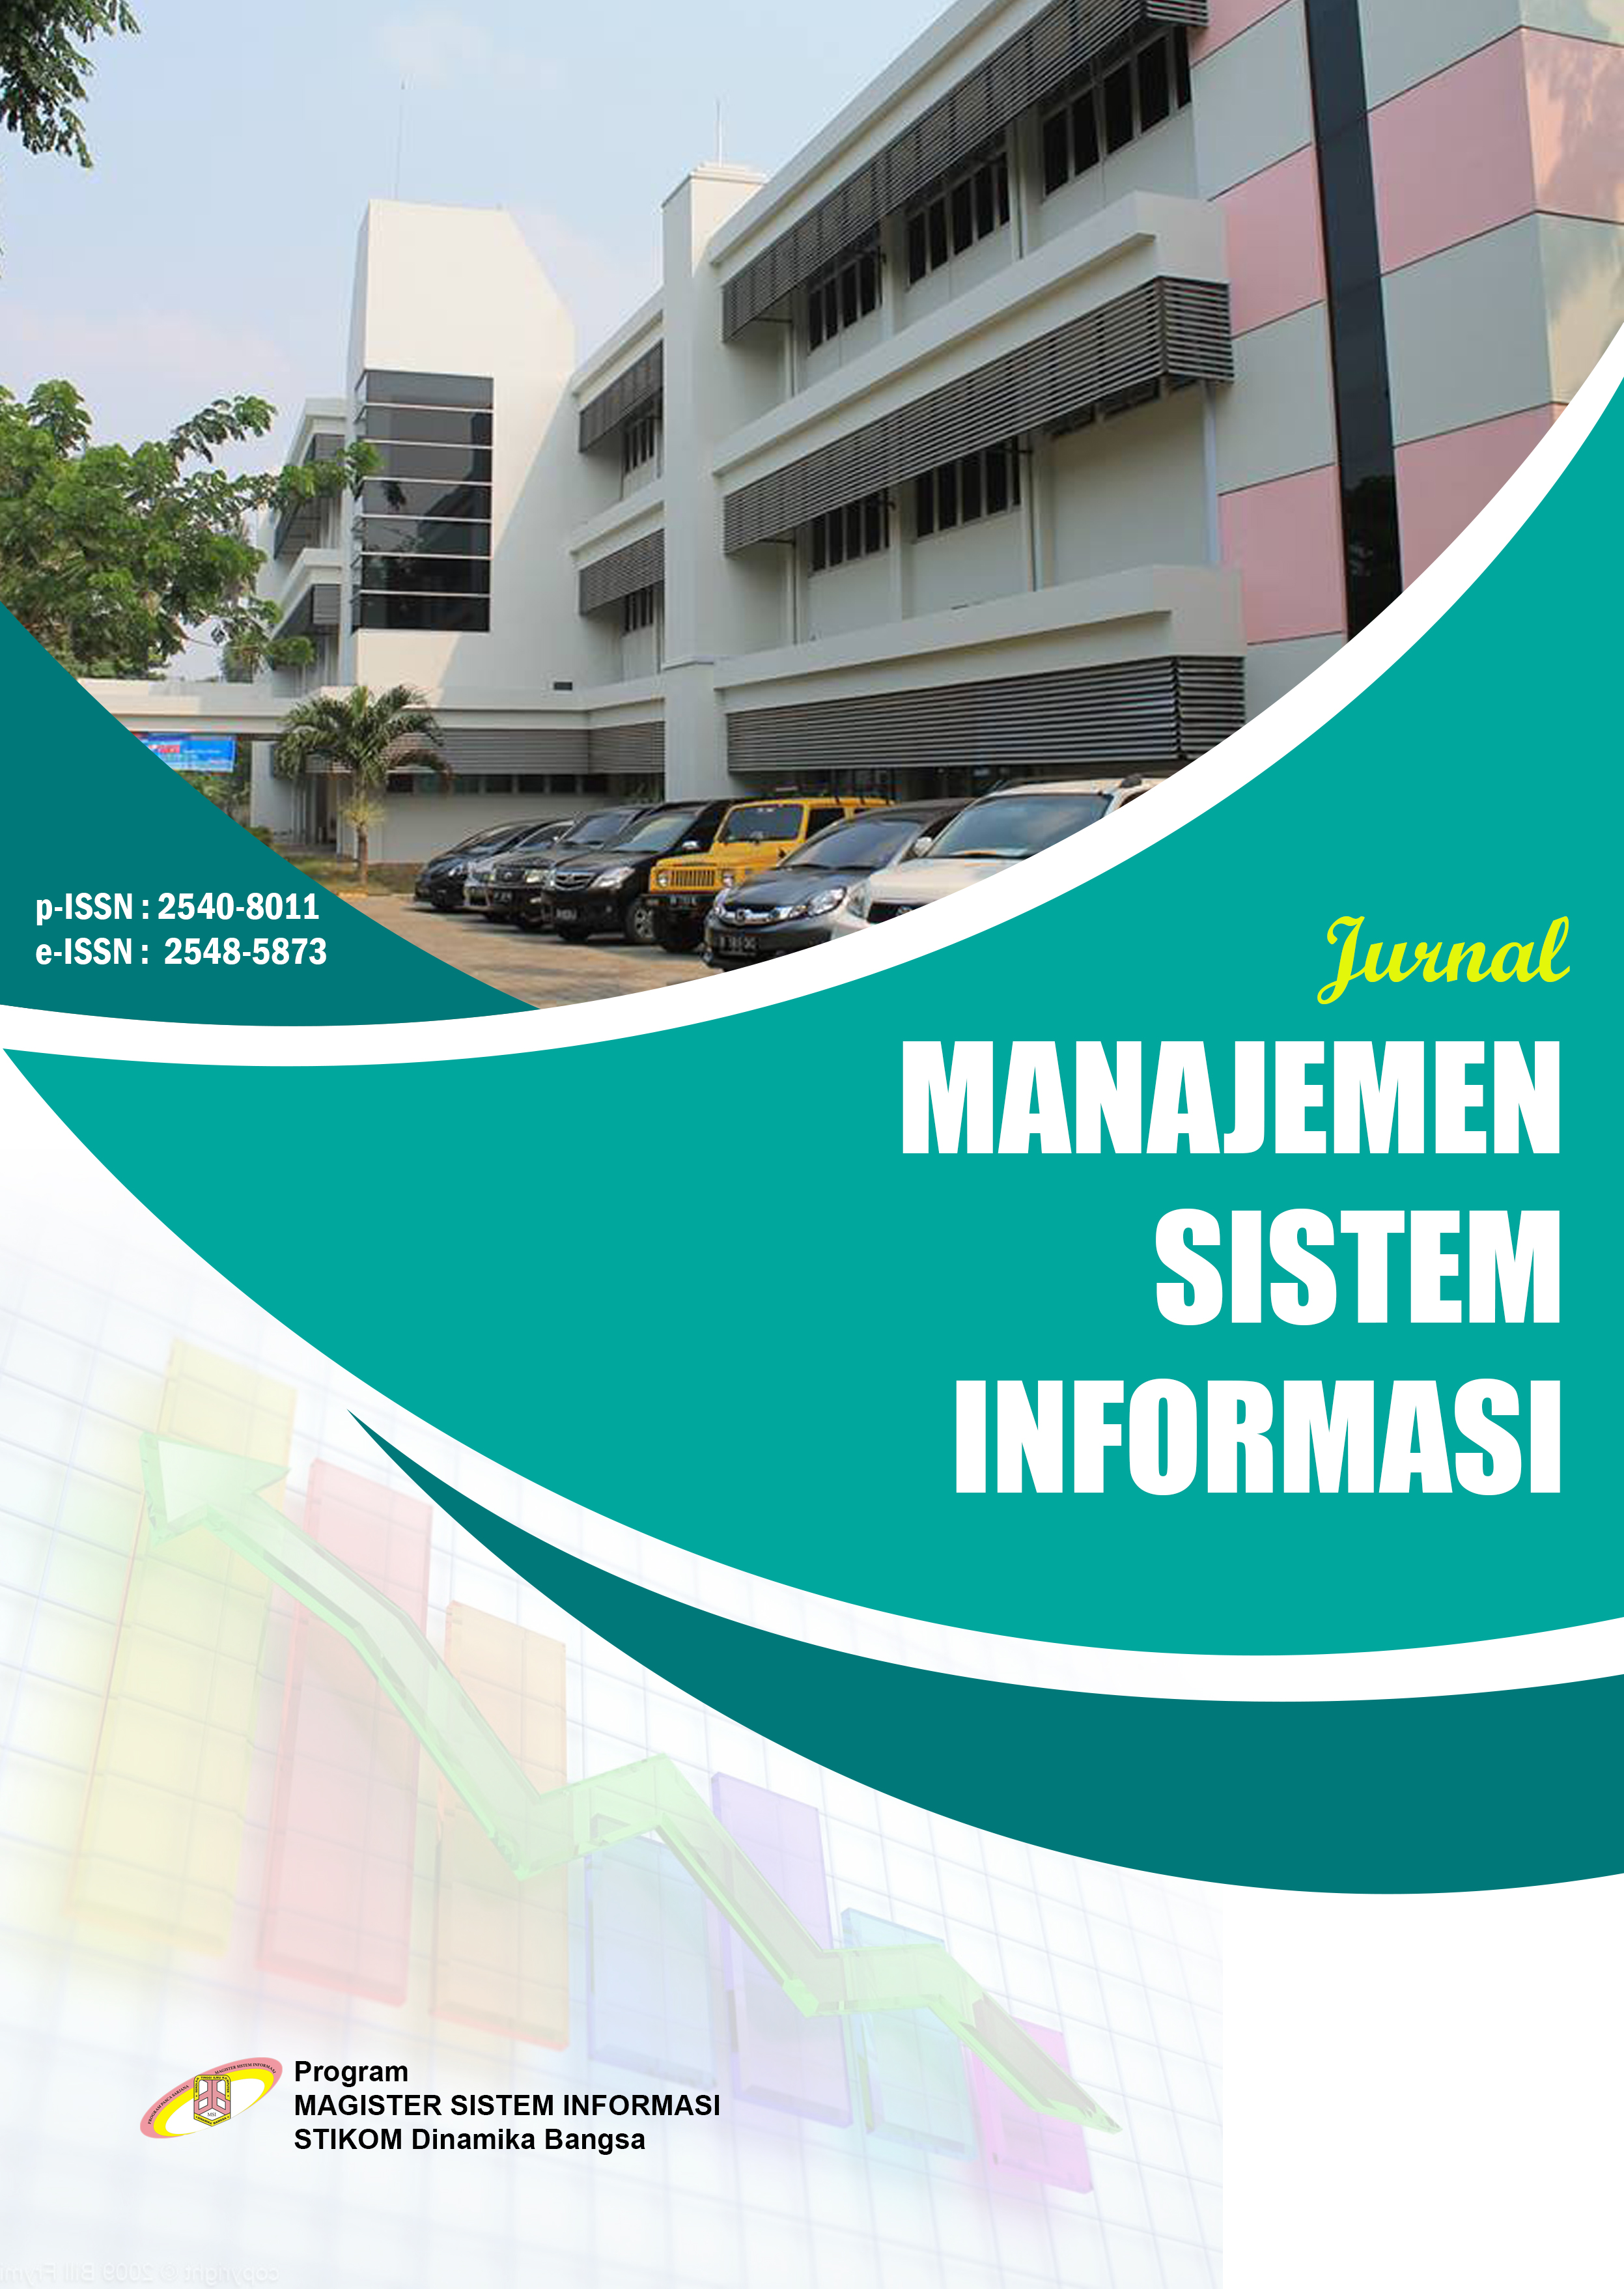 					Lihat Vol 3 No 3 (2018): Jurnal Manajemen Sistem Informasi
				